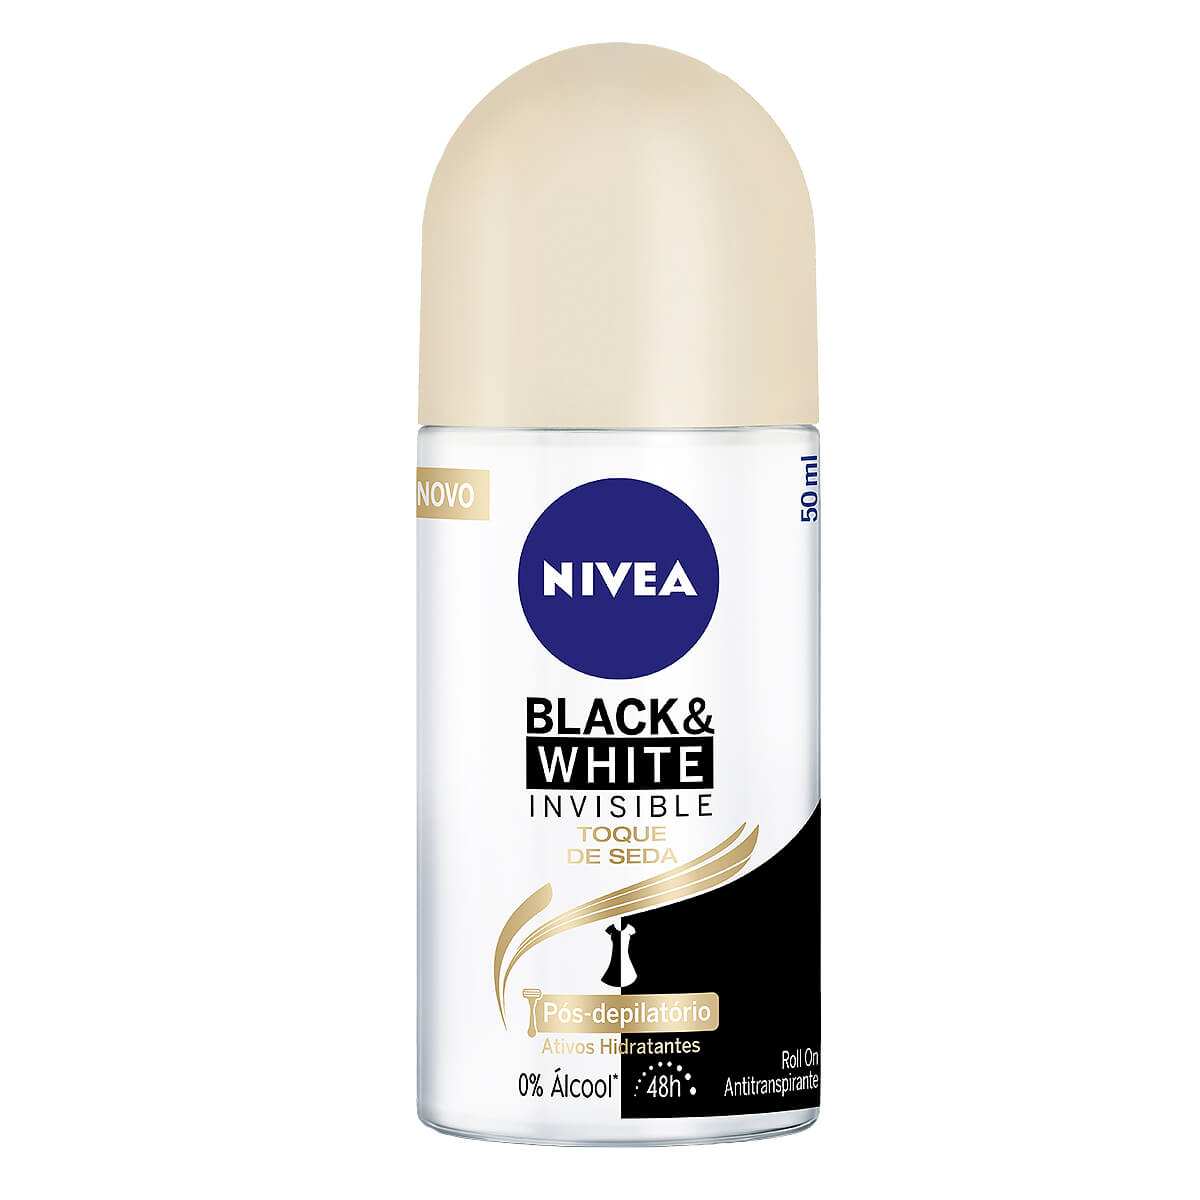 Desodorante Antitranspirante Roll On Nivea Invisible Black & White Toque de Seda 50ml